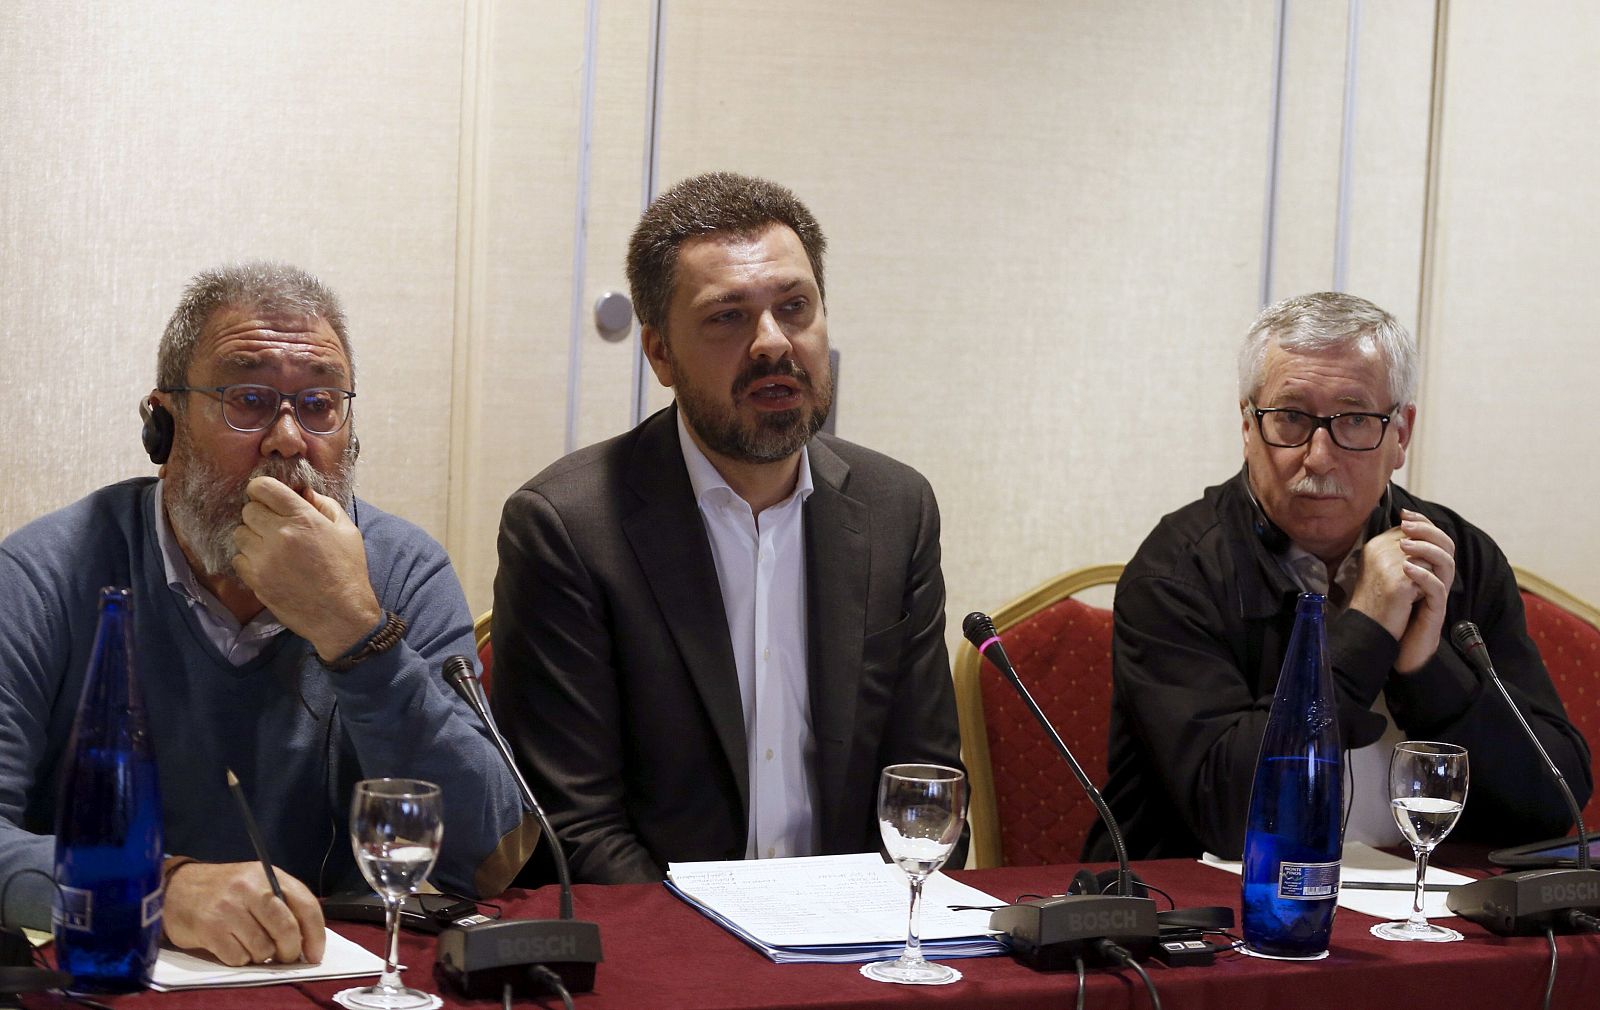 El secretario general de UGT, Cándido Méndez, y el secretario general de CC.OO., Ignacio Fernández Toxo, durante la Conferencia Sindical Europea